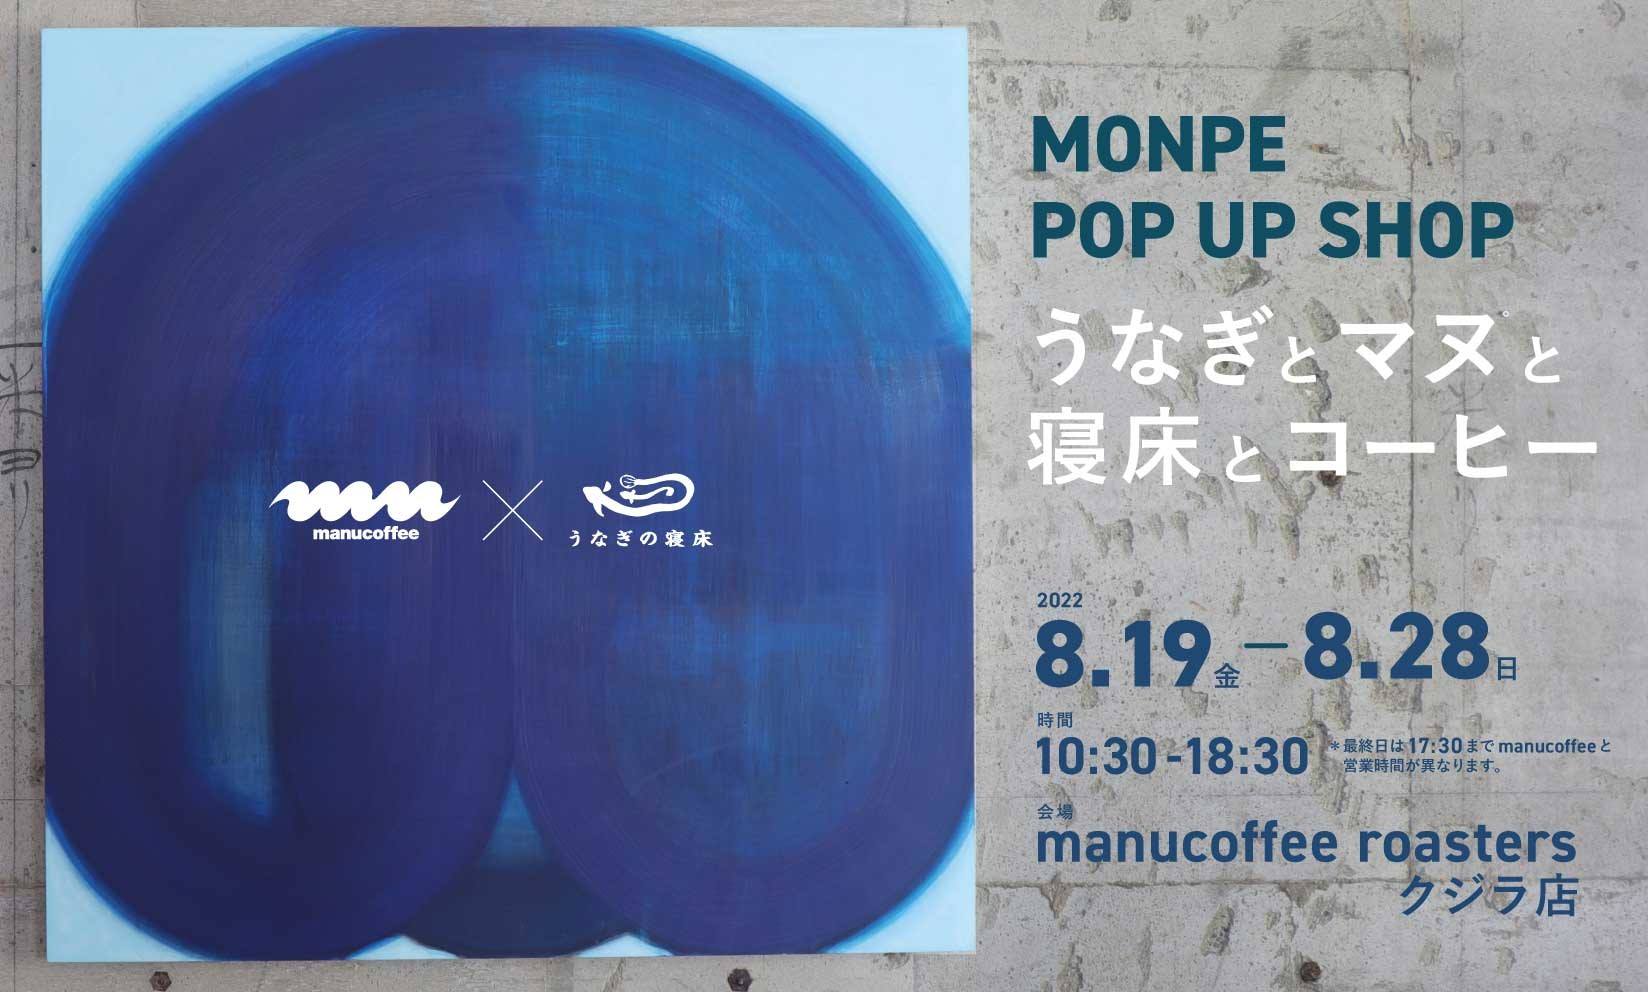 【MONPEイベント】 manucoffee クジラ店（福岡市薬院）にて8/19から開催